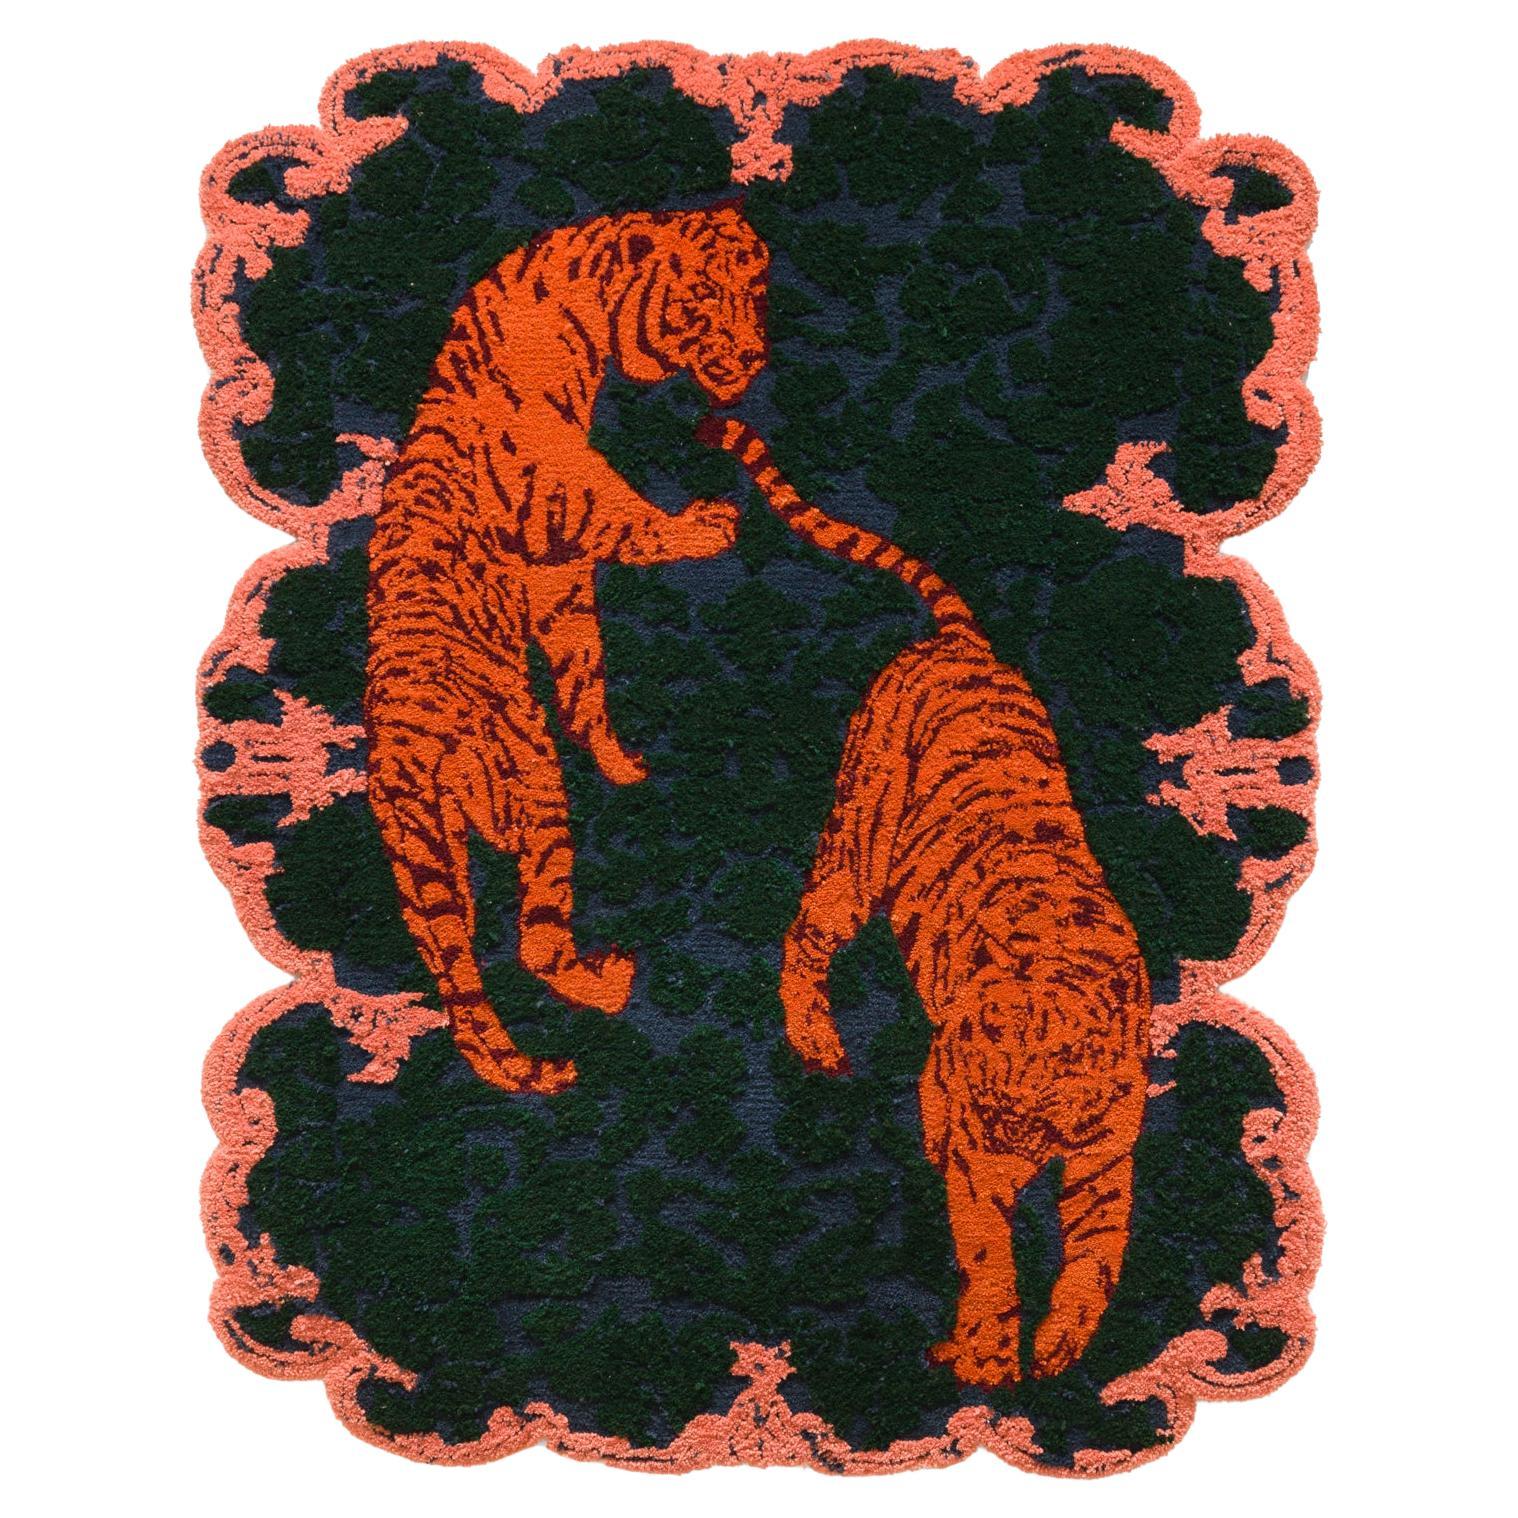 Orange Tiger Rug, Blue, Green, and Pink, artist and workshop collaboration For Sale